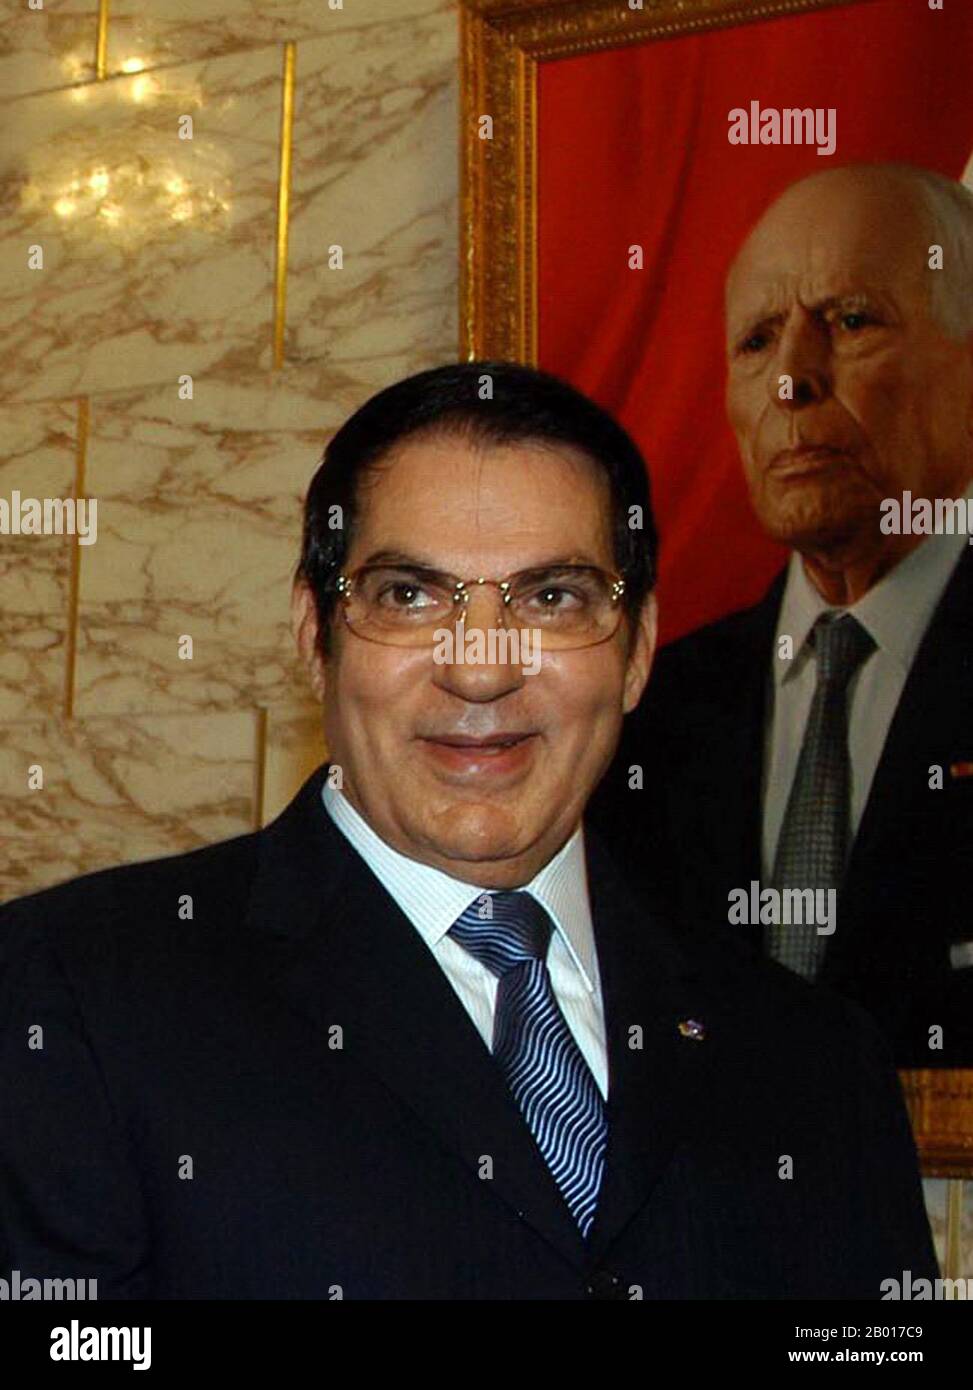 Tunesien: Zine El Abidine Ben Ali, Präsident von Tunesien (r. 1987-2011), vor einem Porträt des ehemaligen Präsidenten Habib Bourguiba, 2008. November, Presidencia de la Nacion Argentina (CC BY-2,0 License). Zine El Abidine Ben Ali (3. September 1936 - 19. September 2019) war der zweite Präsident der Tunesischen Republik. Er bekleidete das Amt vom 7. November 1987 an, bis er am 14. Januar 2011 zurücktreten und aus dem Land fliehen musste. Ben Ali wurde im Oktober 1987 zum Premierminister ernannt und übernahm im November 1987 die Präsidentschaft durch einen blutlosen Staatsstreich des damaligen Präsidenten Habib Bourguiba. Stockfoto